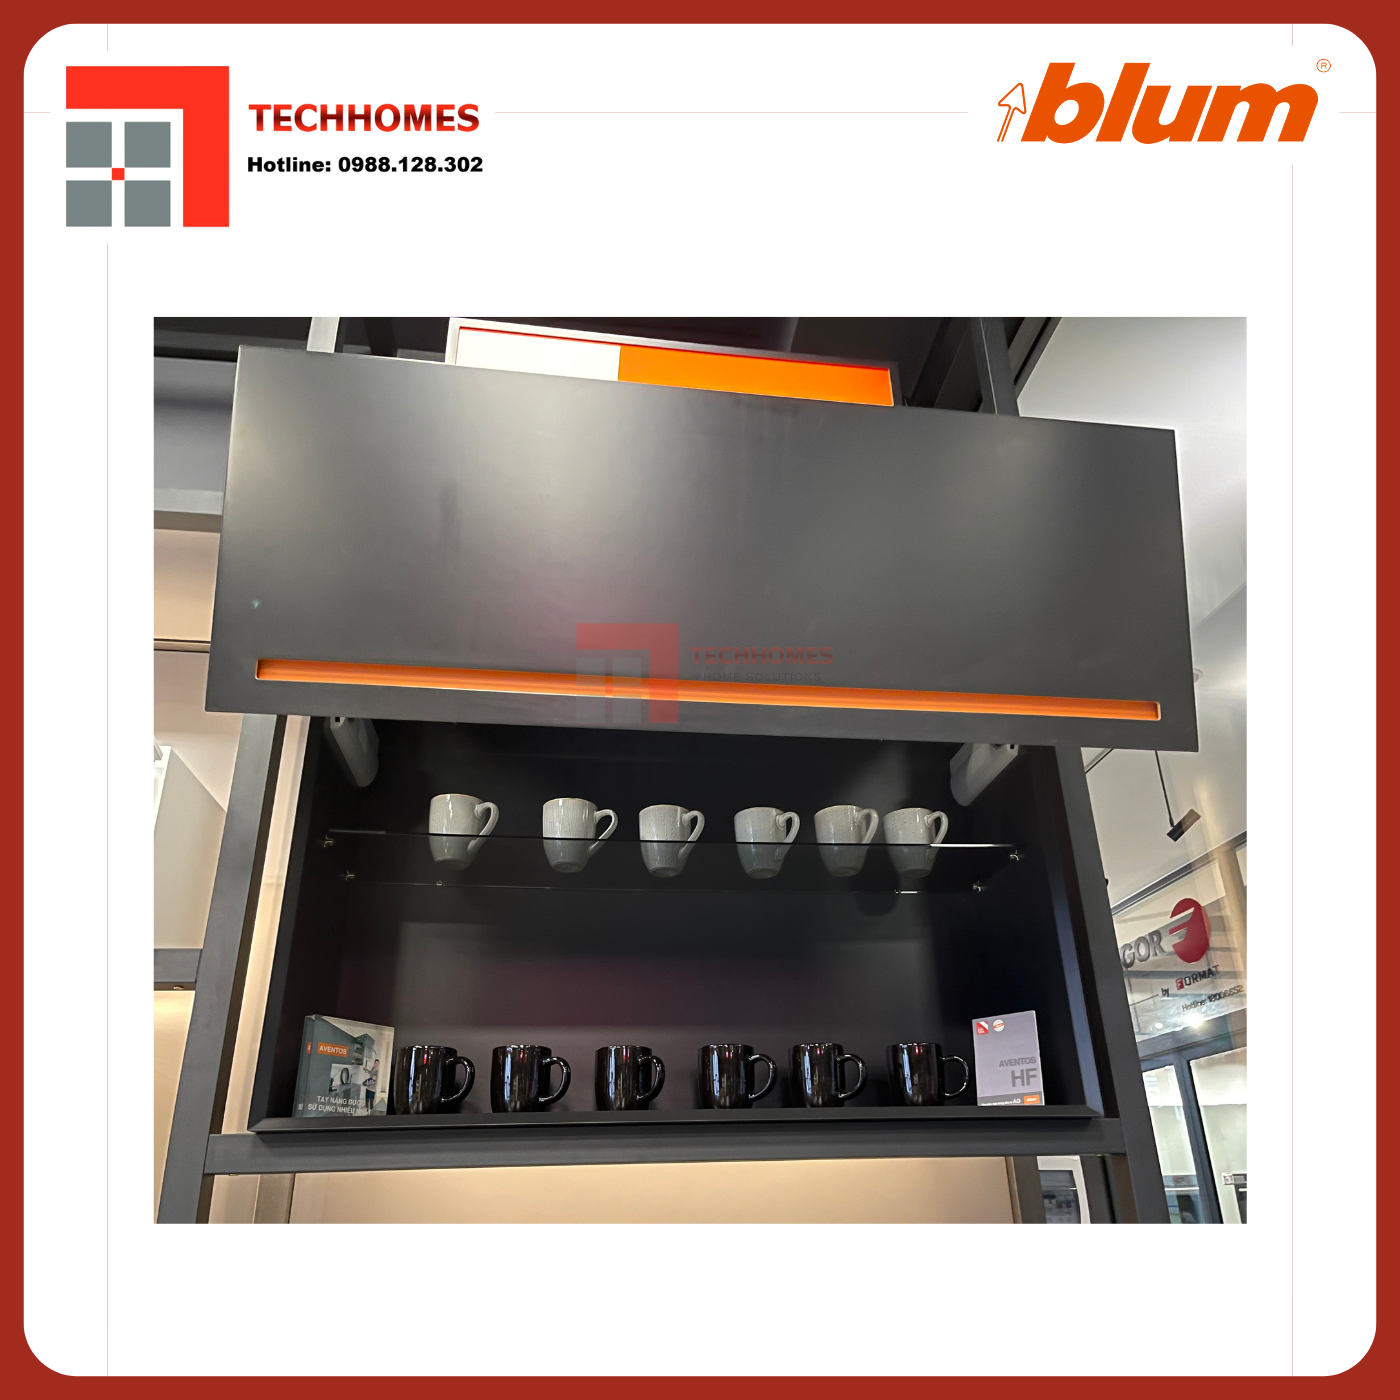 TAY NÂNG BLUM HF25 trọn bộ tay nâng Blum f25 nhập khẩu chính hãng Áo 